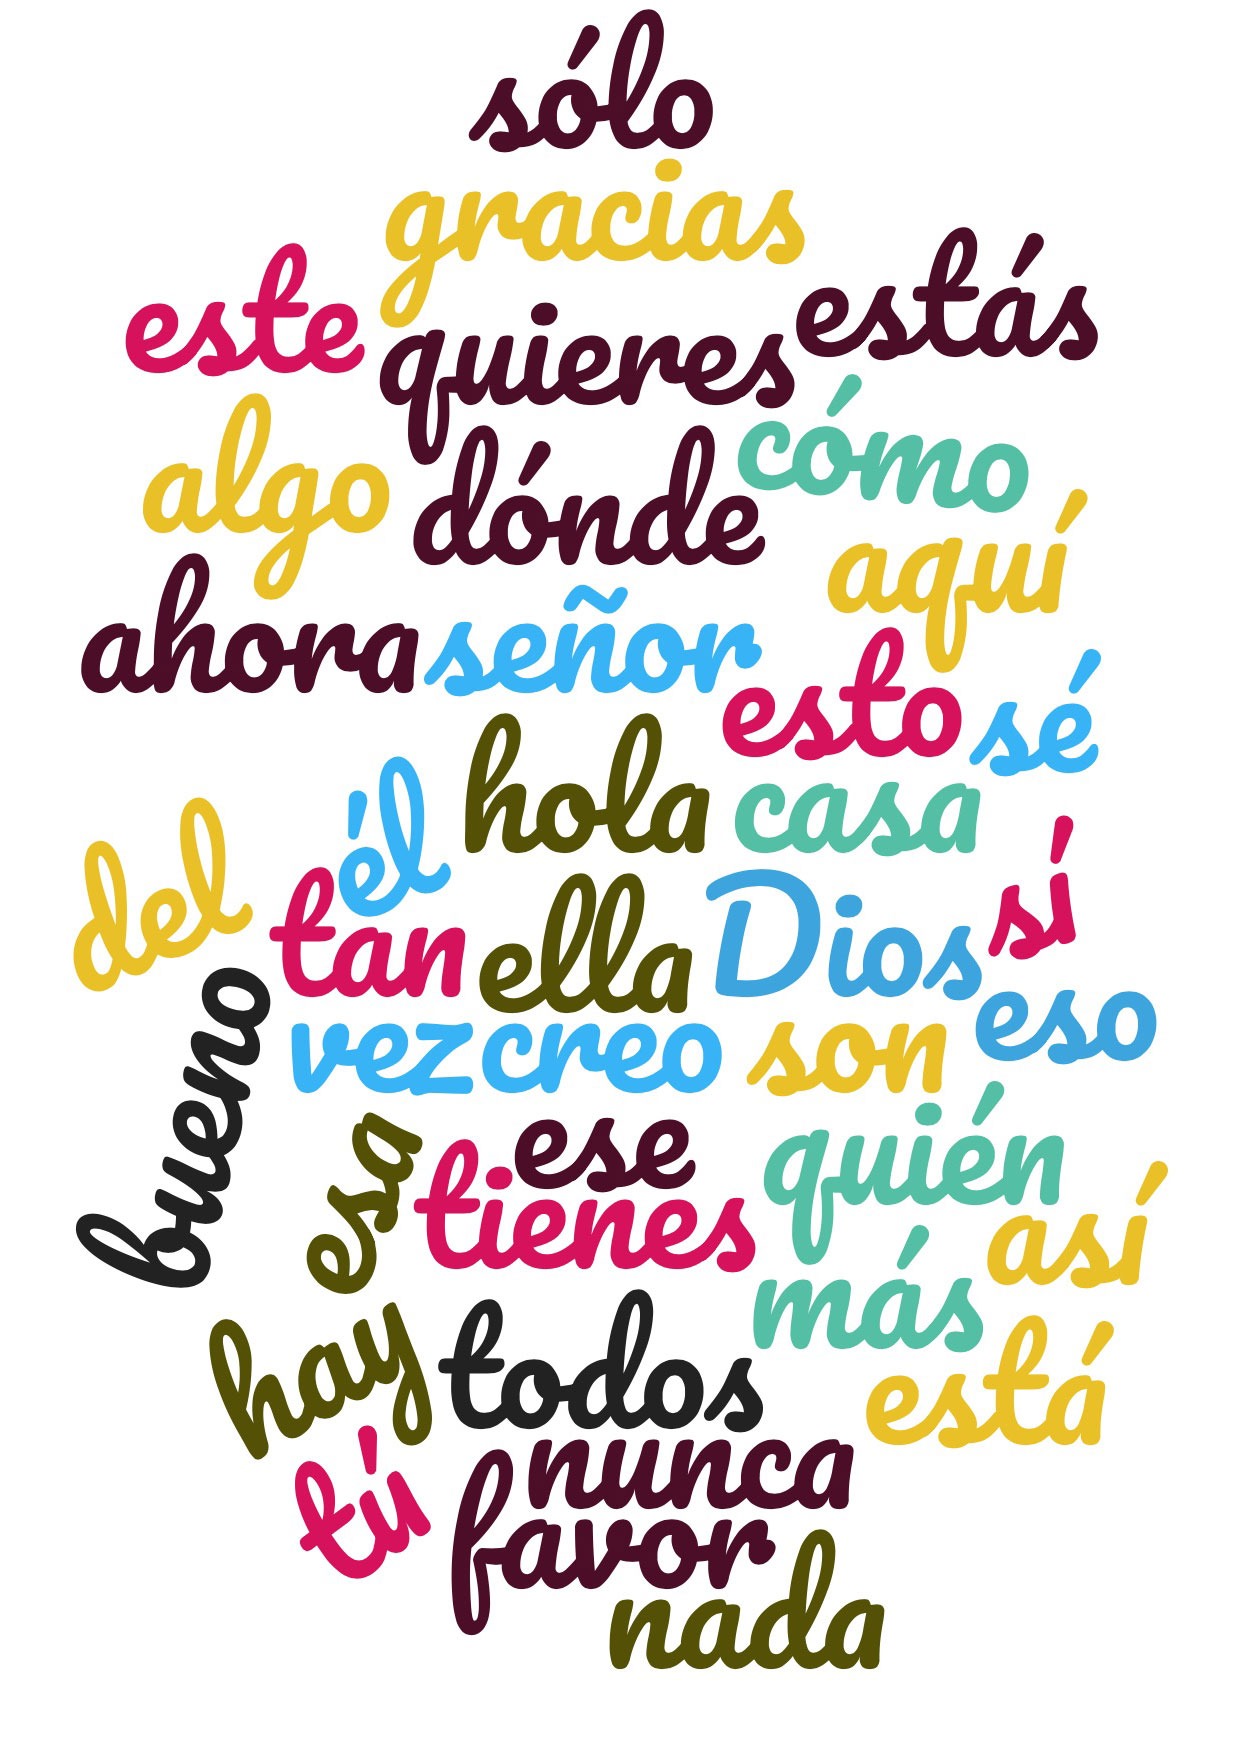 Spanische Wörter in einer Wortwolke